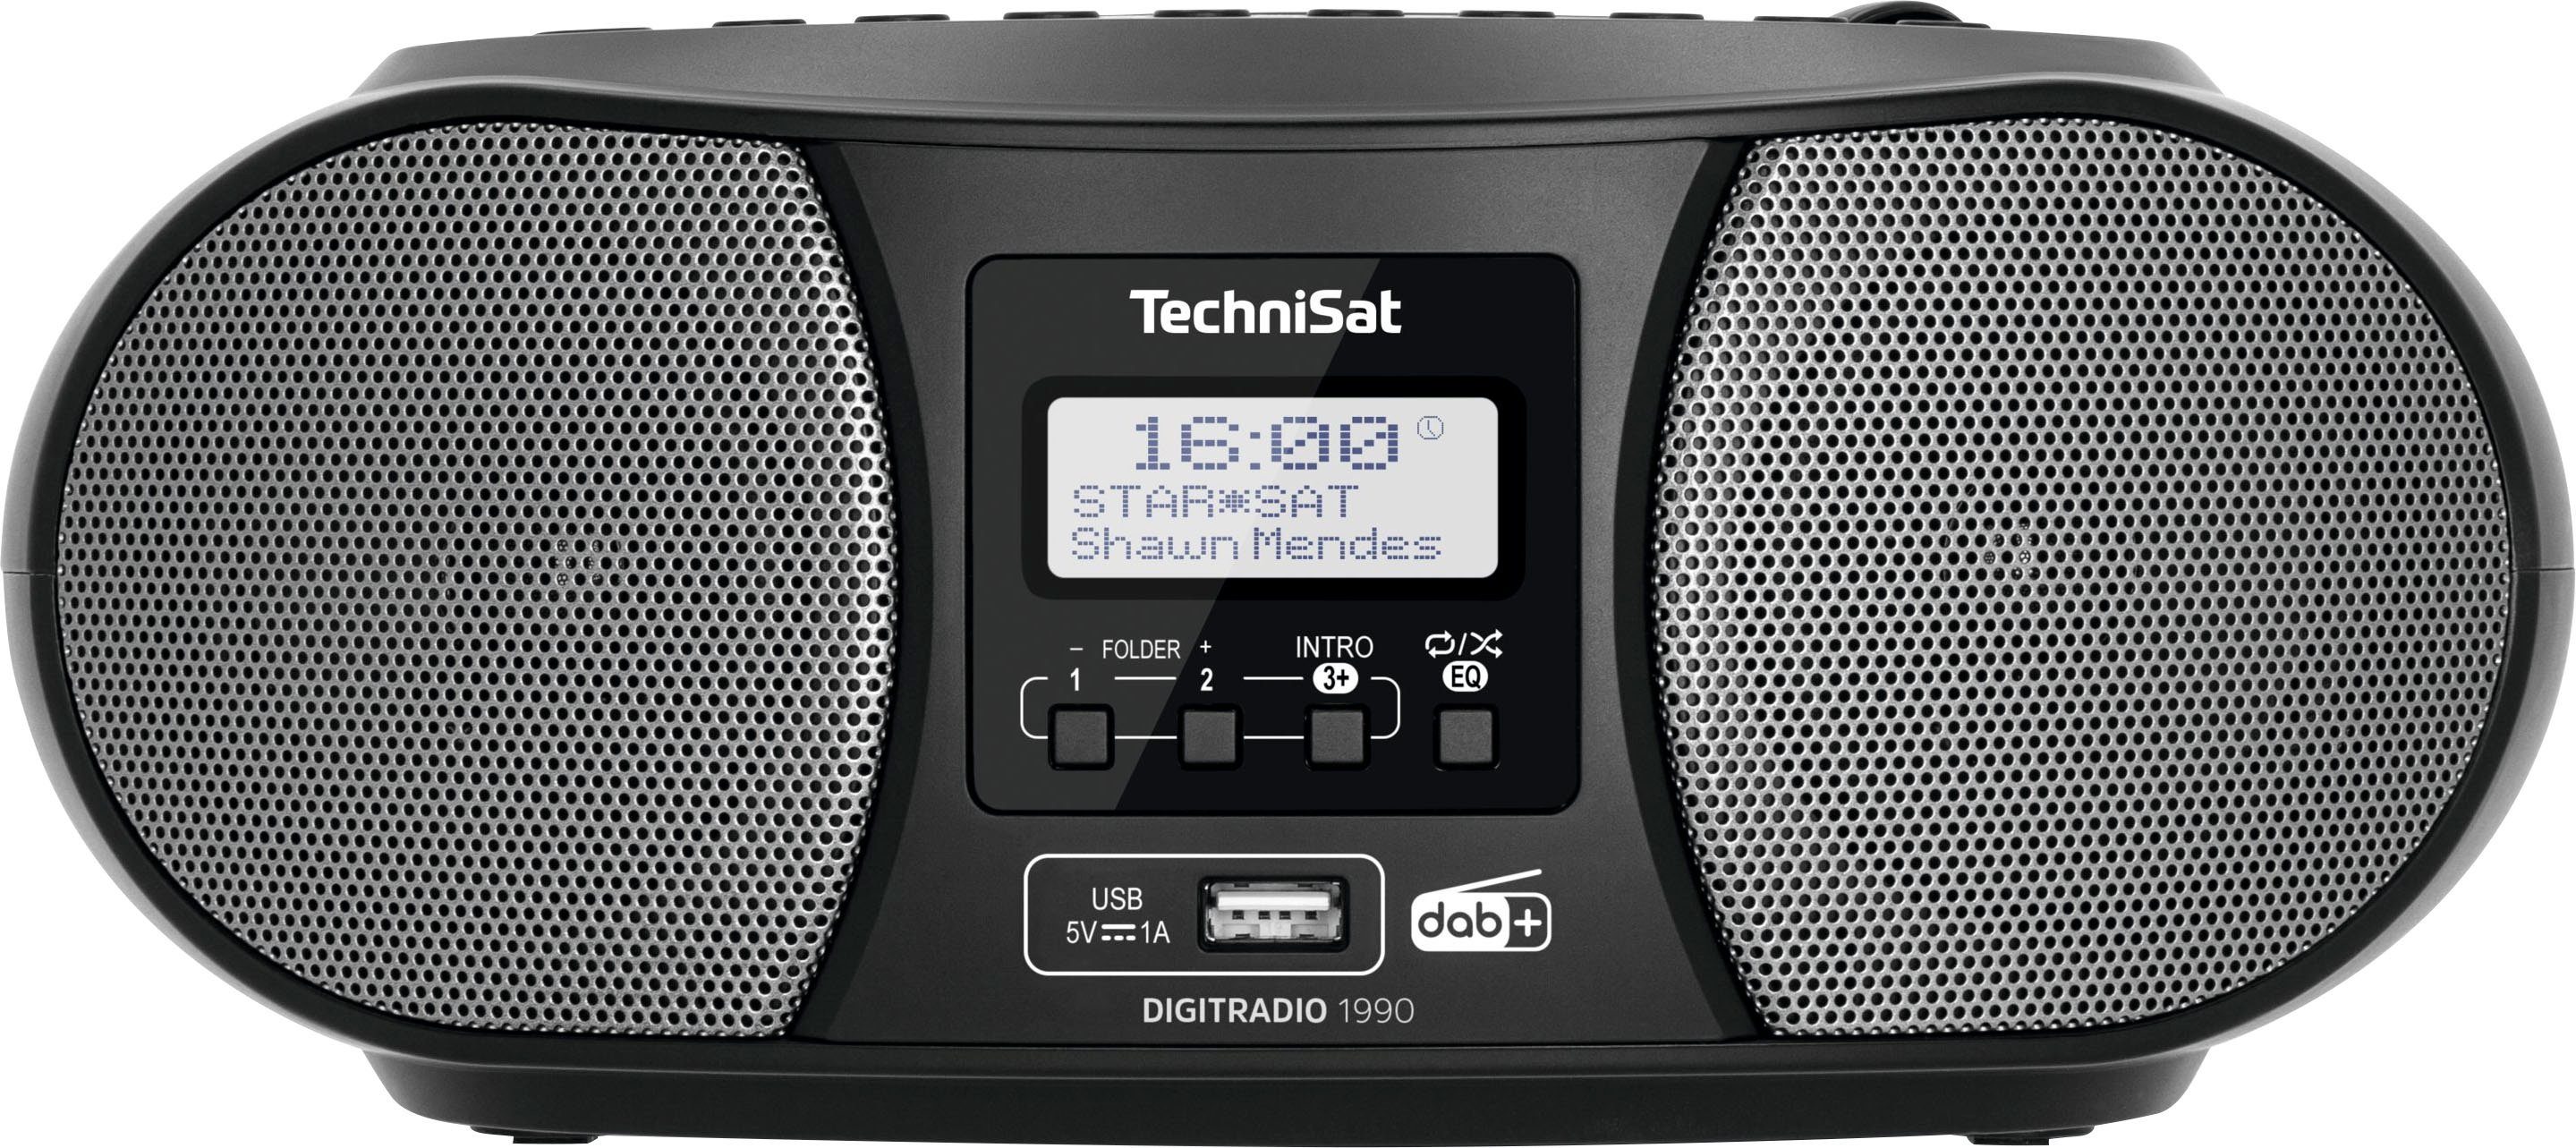 TechniSat »Digitradio 1990 Stereo-« Boombox (FM-Tuner, Digitalradio (DAB),  mit DAB+, UKW, CD, Bluetooth, USB, Batteriebetrieb möglich) online kaufen |  OTTO